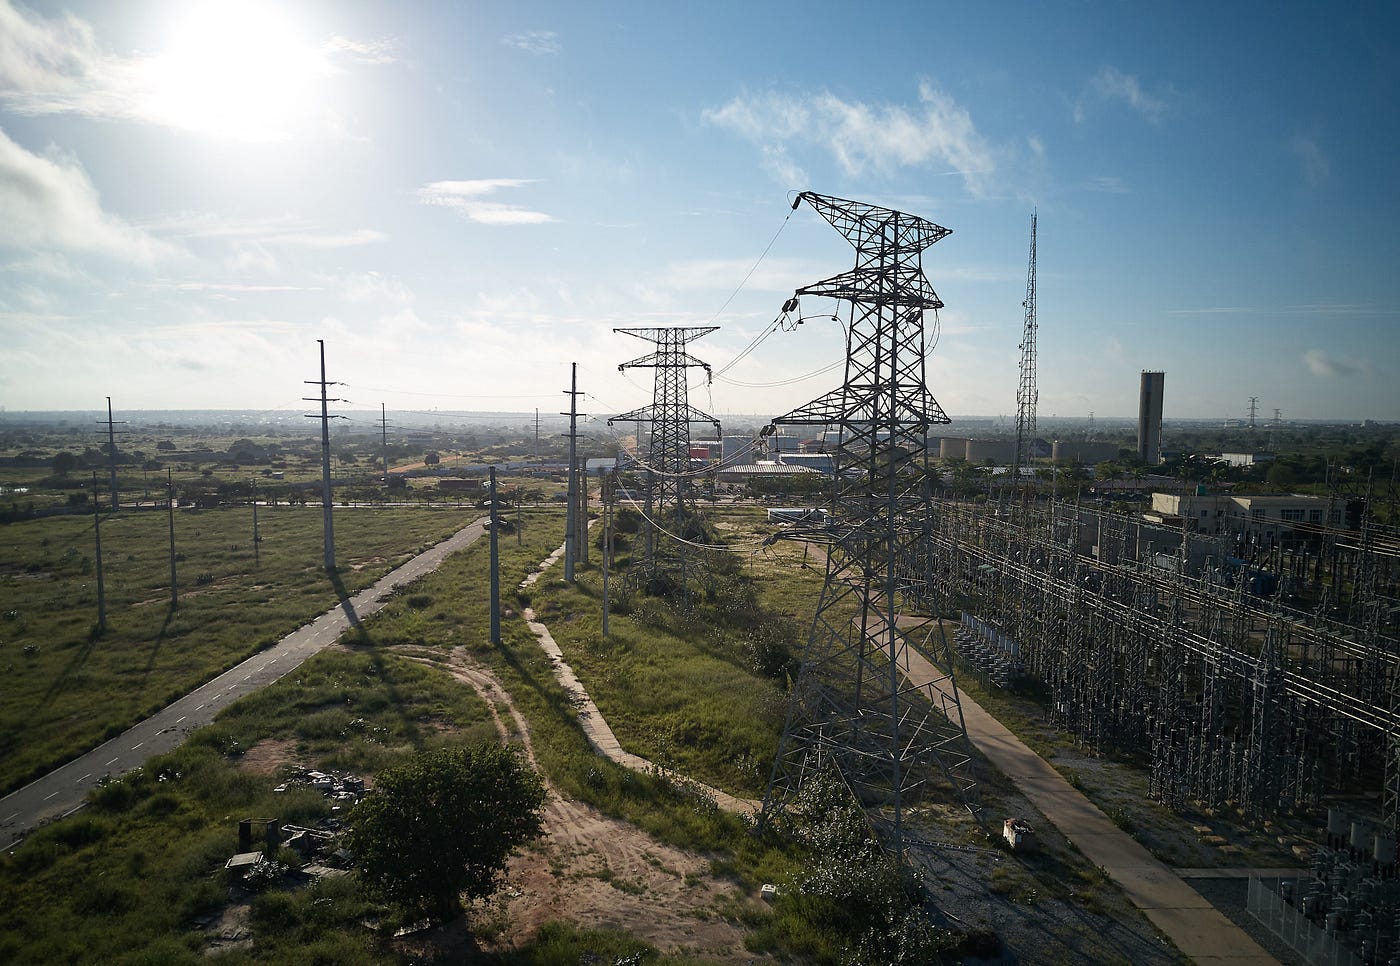 Pylons, transmission lines, substation